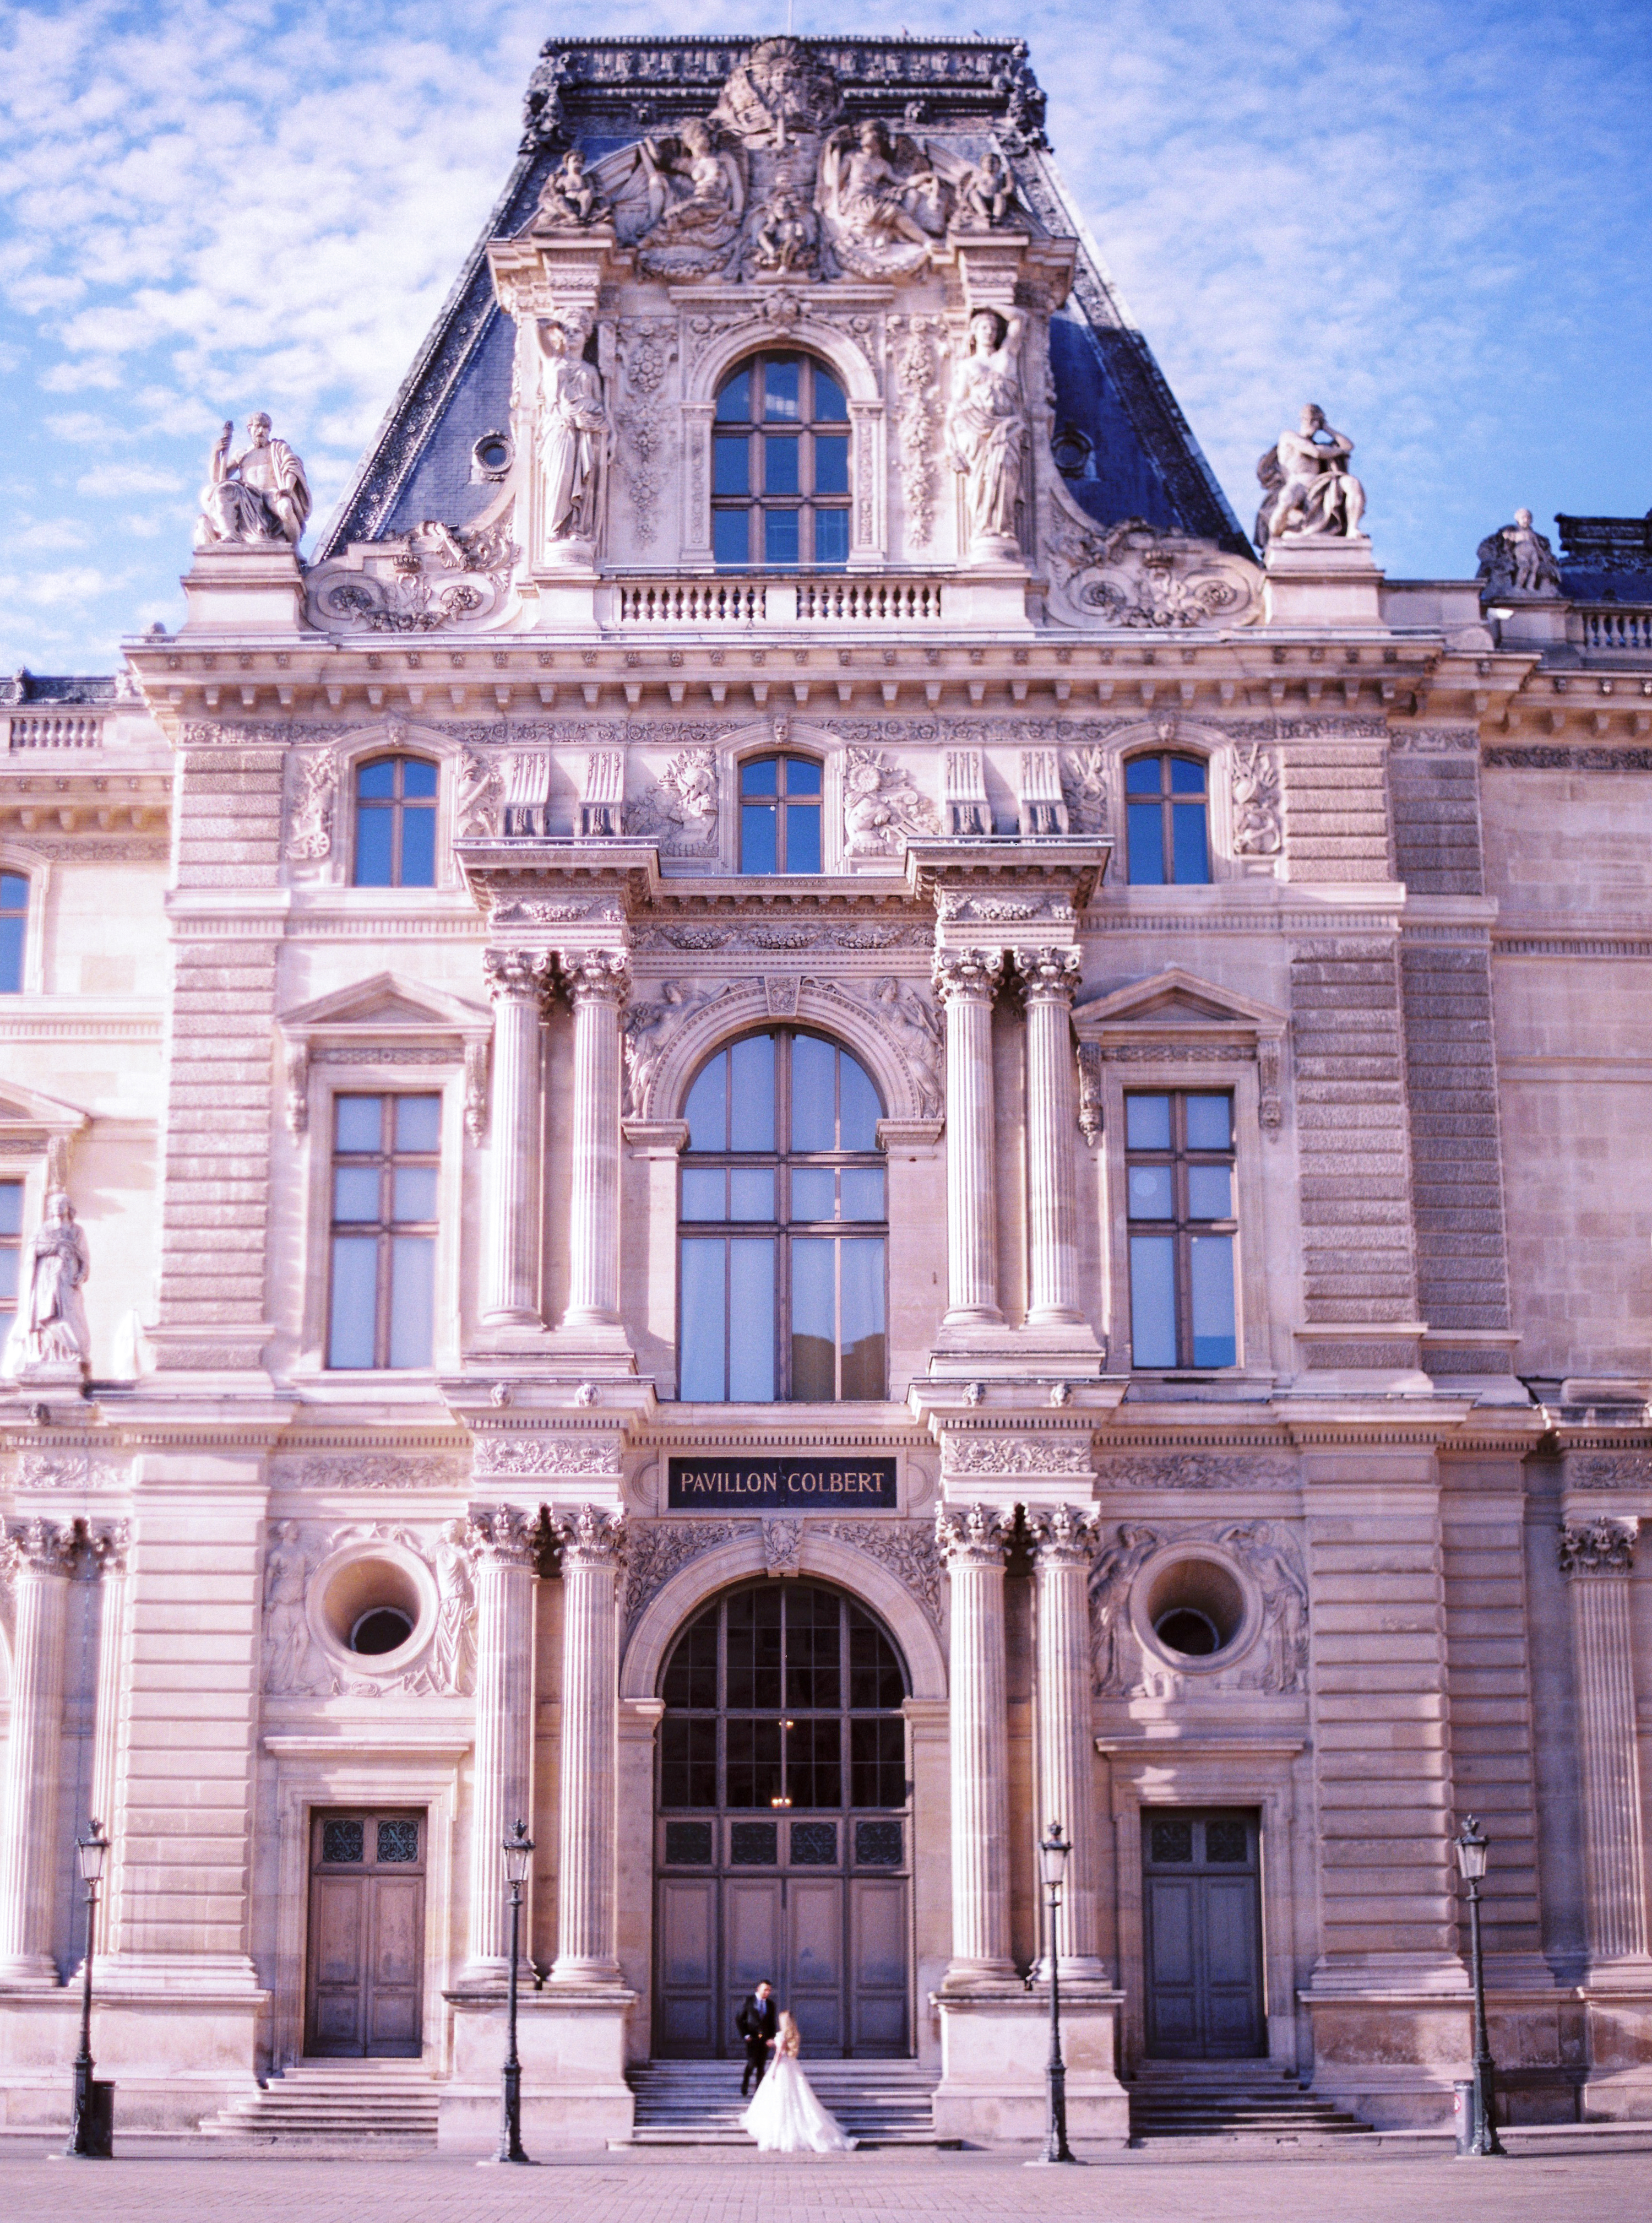 Louvre Museum - Paris, France - Le Secret D'Audrey